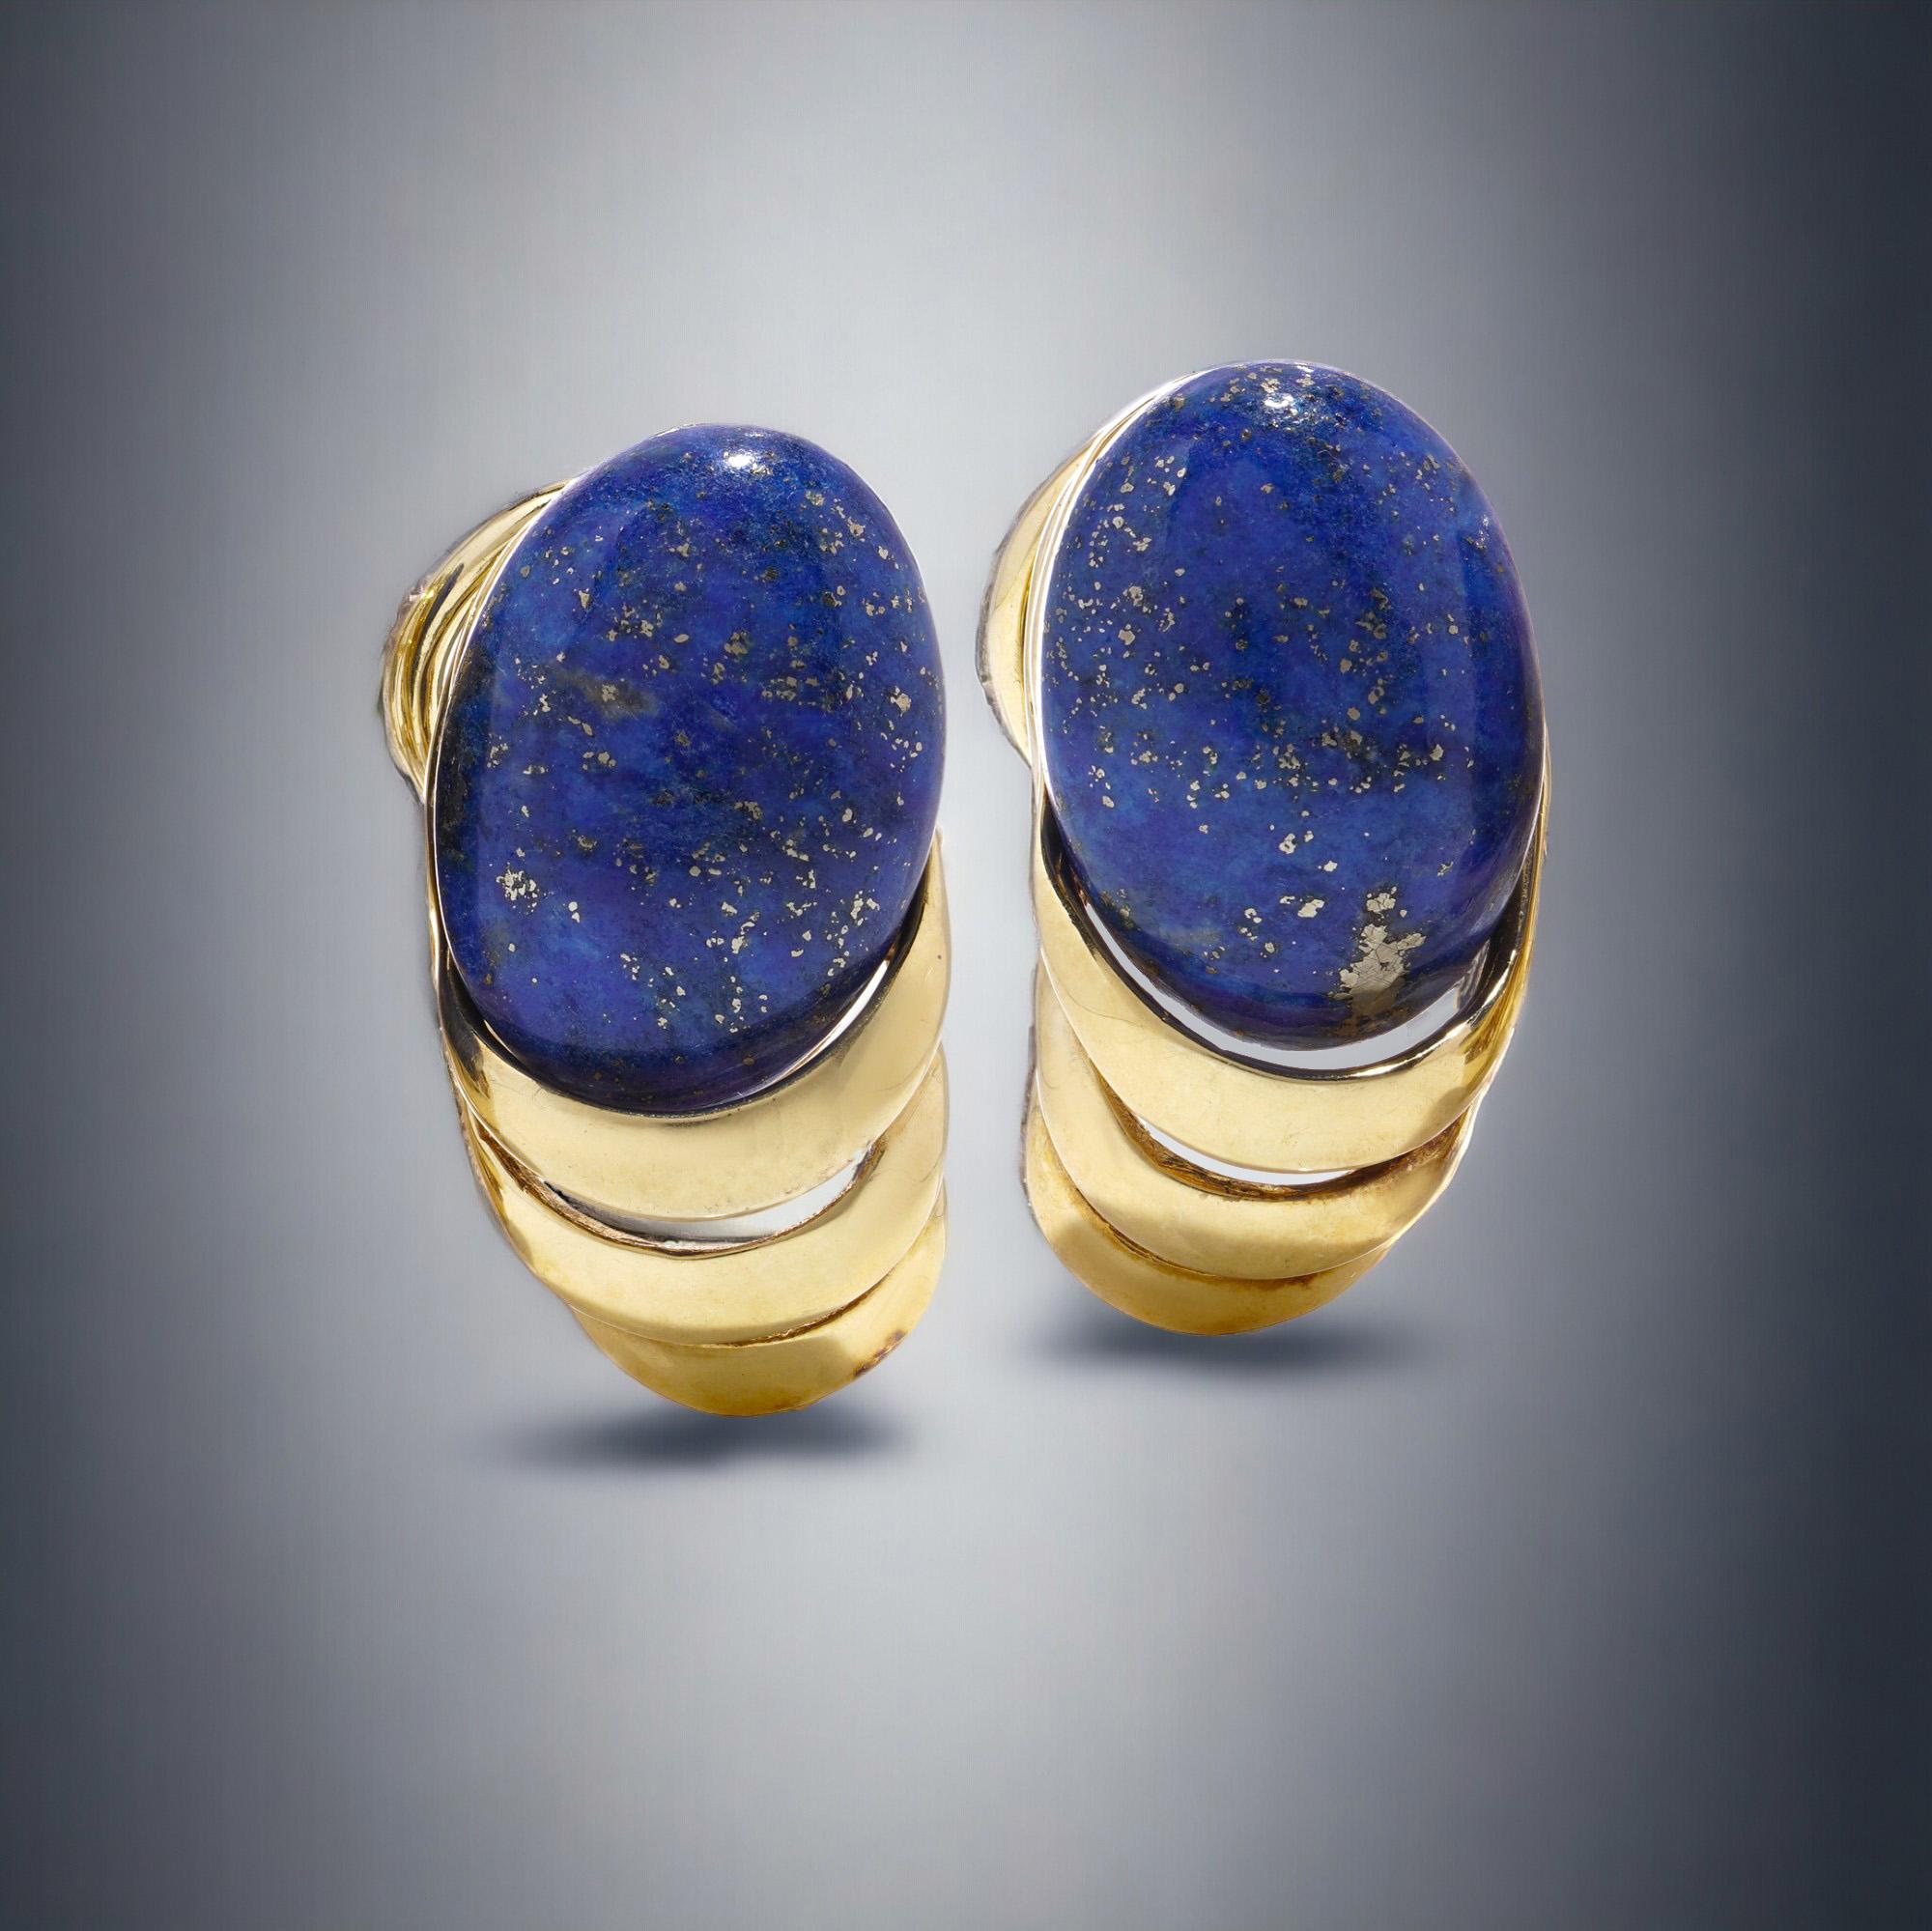 Vintage 14kt Gelbgold Clip-On Ohrstecker mit ovalen Cabochon Lapis Lazuli Stones.

Diese atemberaubenden Vintage-Ohrringe bestehen aus einem Paar ovaler Lapislazuli-Cabochons, die in 14-karätigem Gelbgold gefasst sind. Jeder Ohrring ist mit der